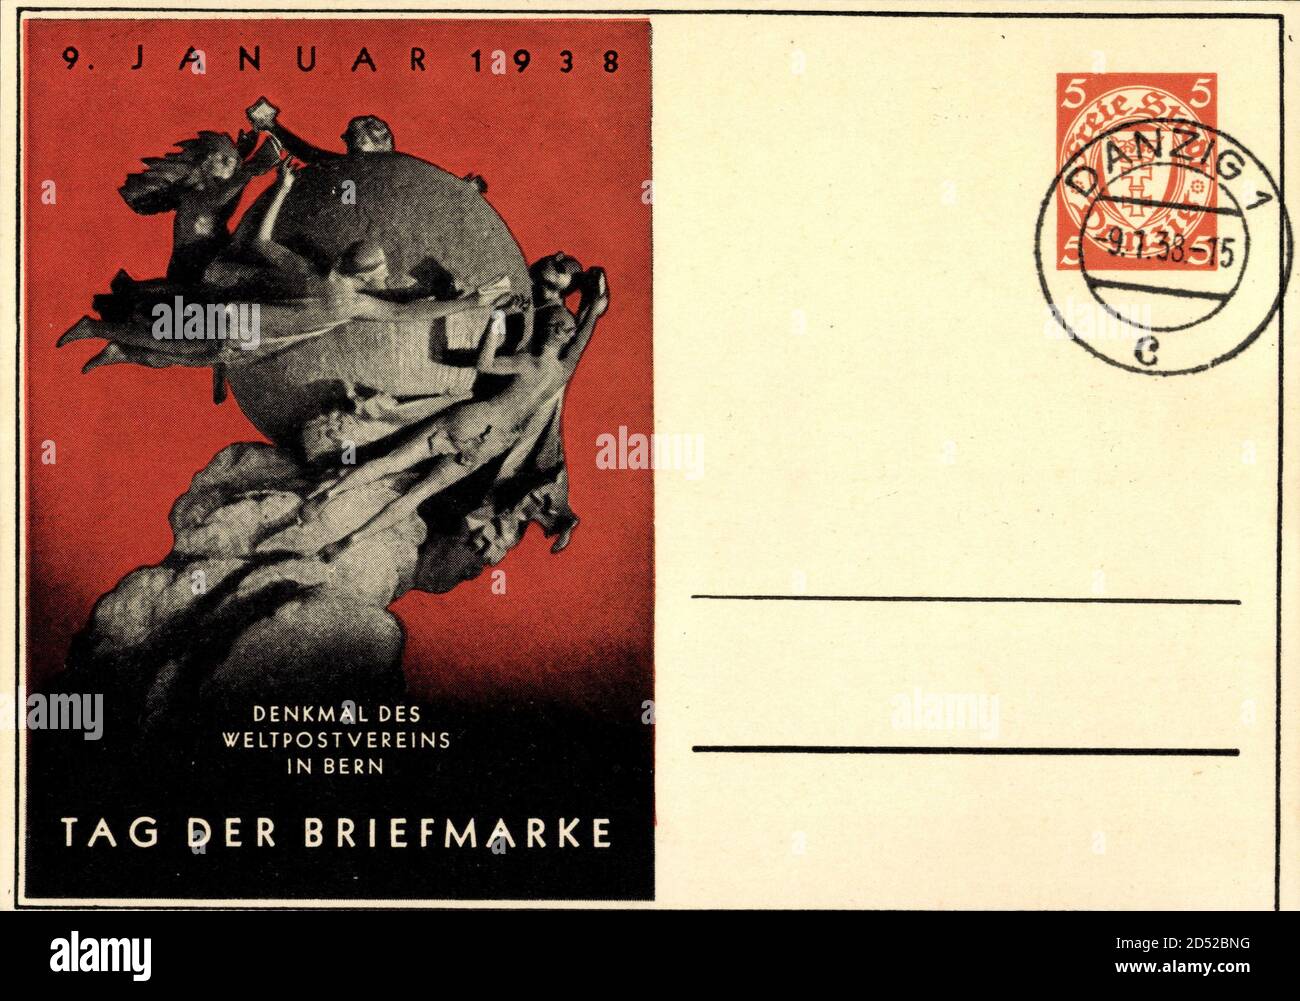 Ganzsachen Tag der Briefmarke, Denkmal des Weltpostvereins in Bern, Danzig | usage worldwide Stock Photo